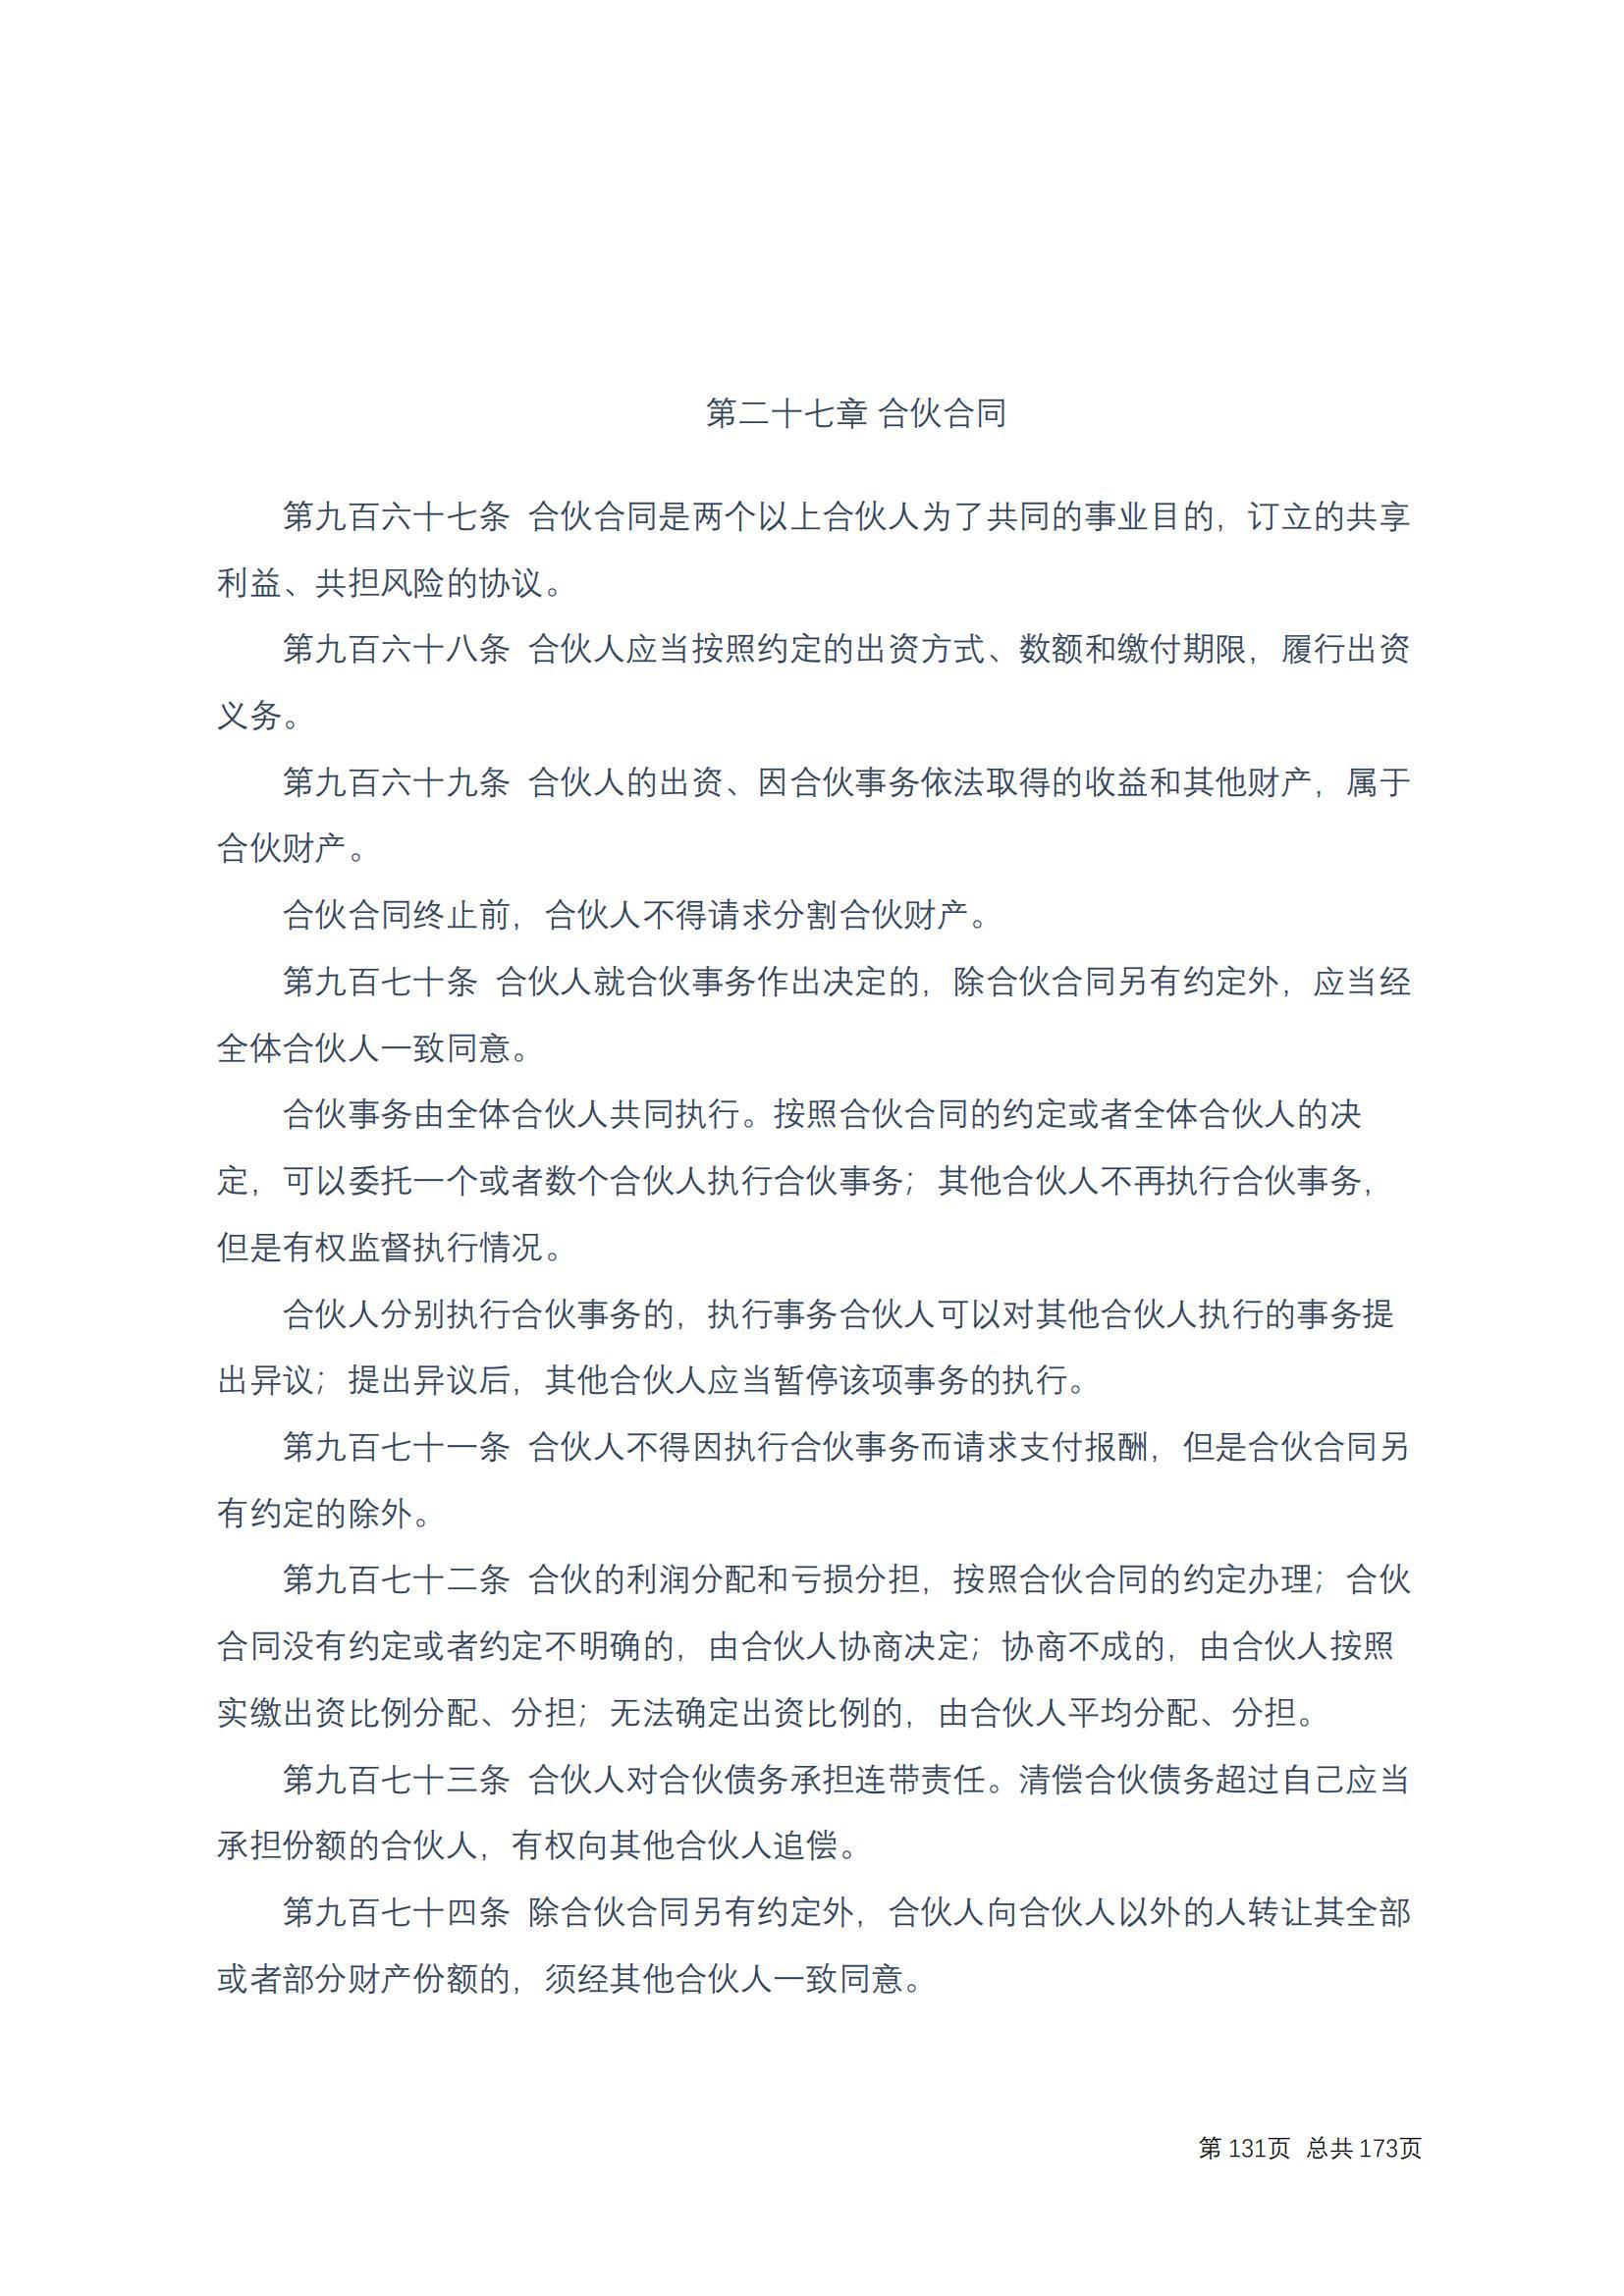 中华人民共和国民法典 修改过_130